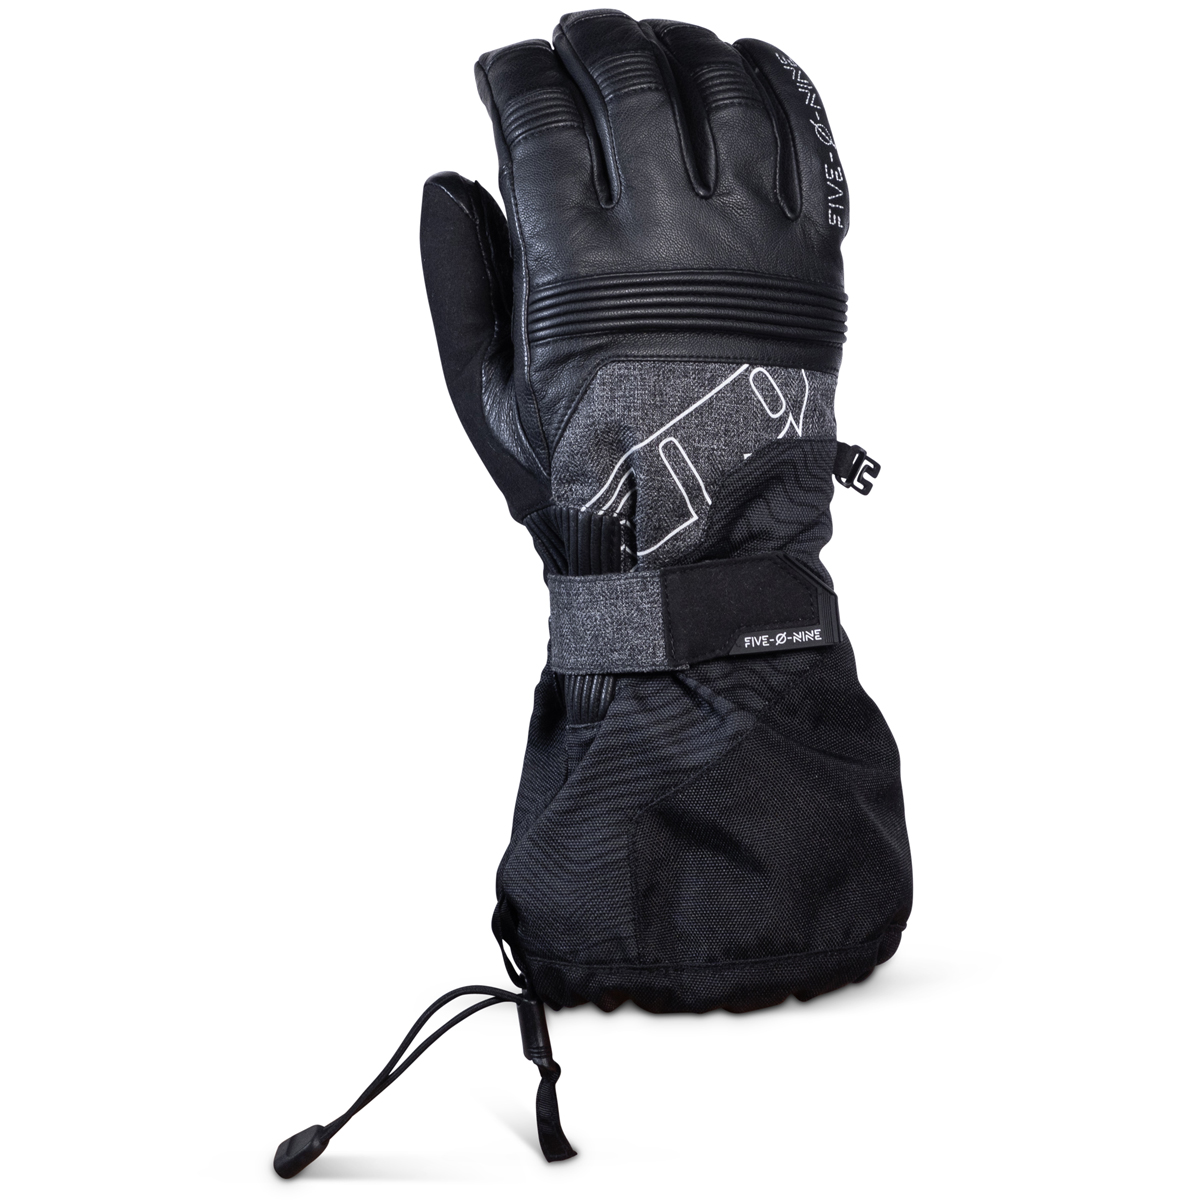 509 gloves adult range gloves - snowmobile